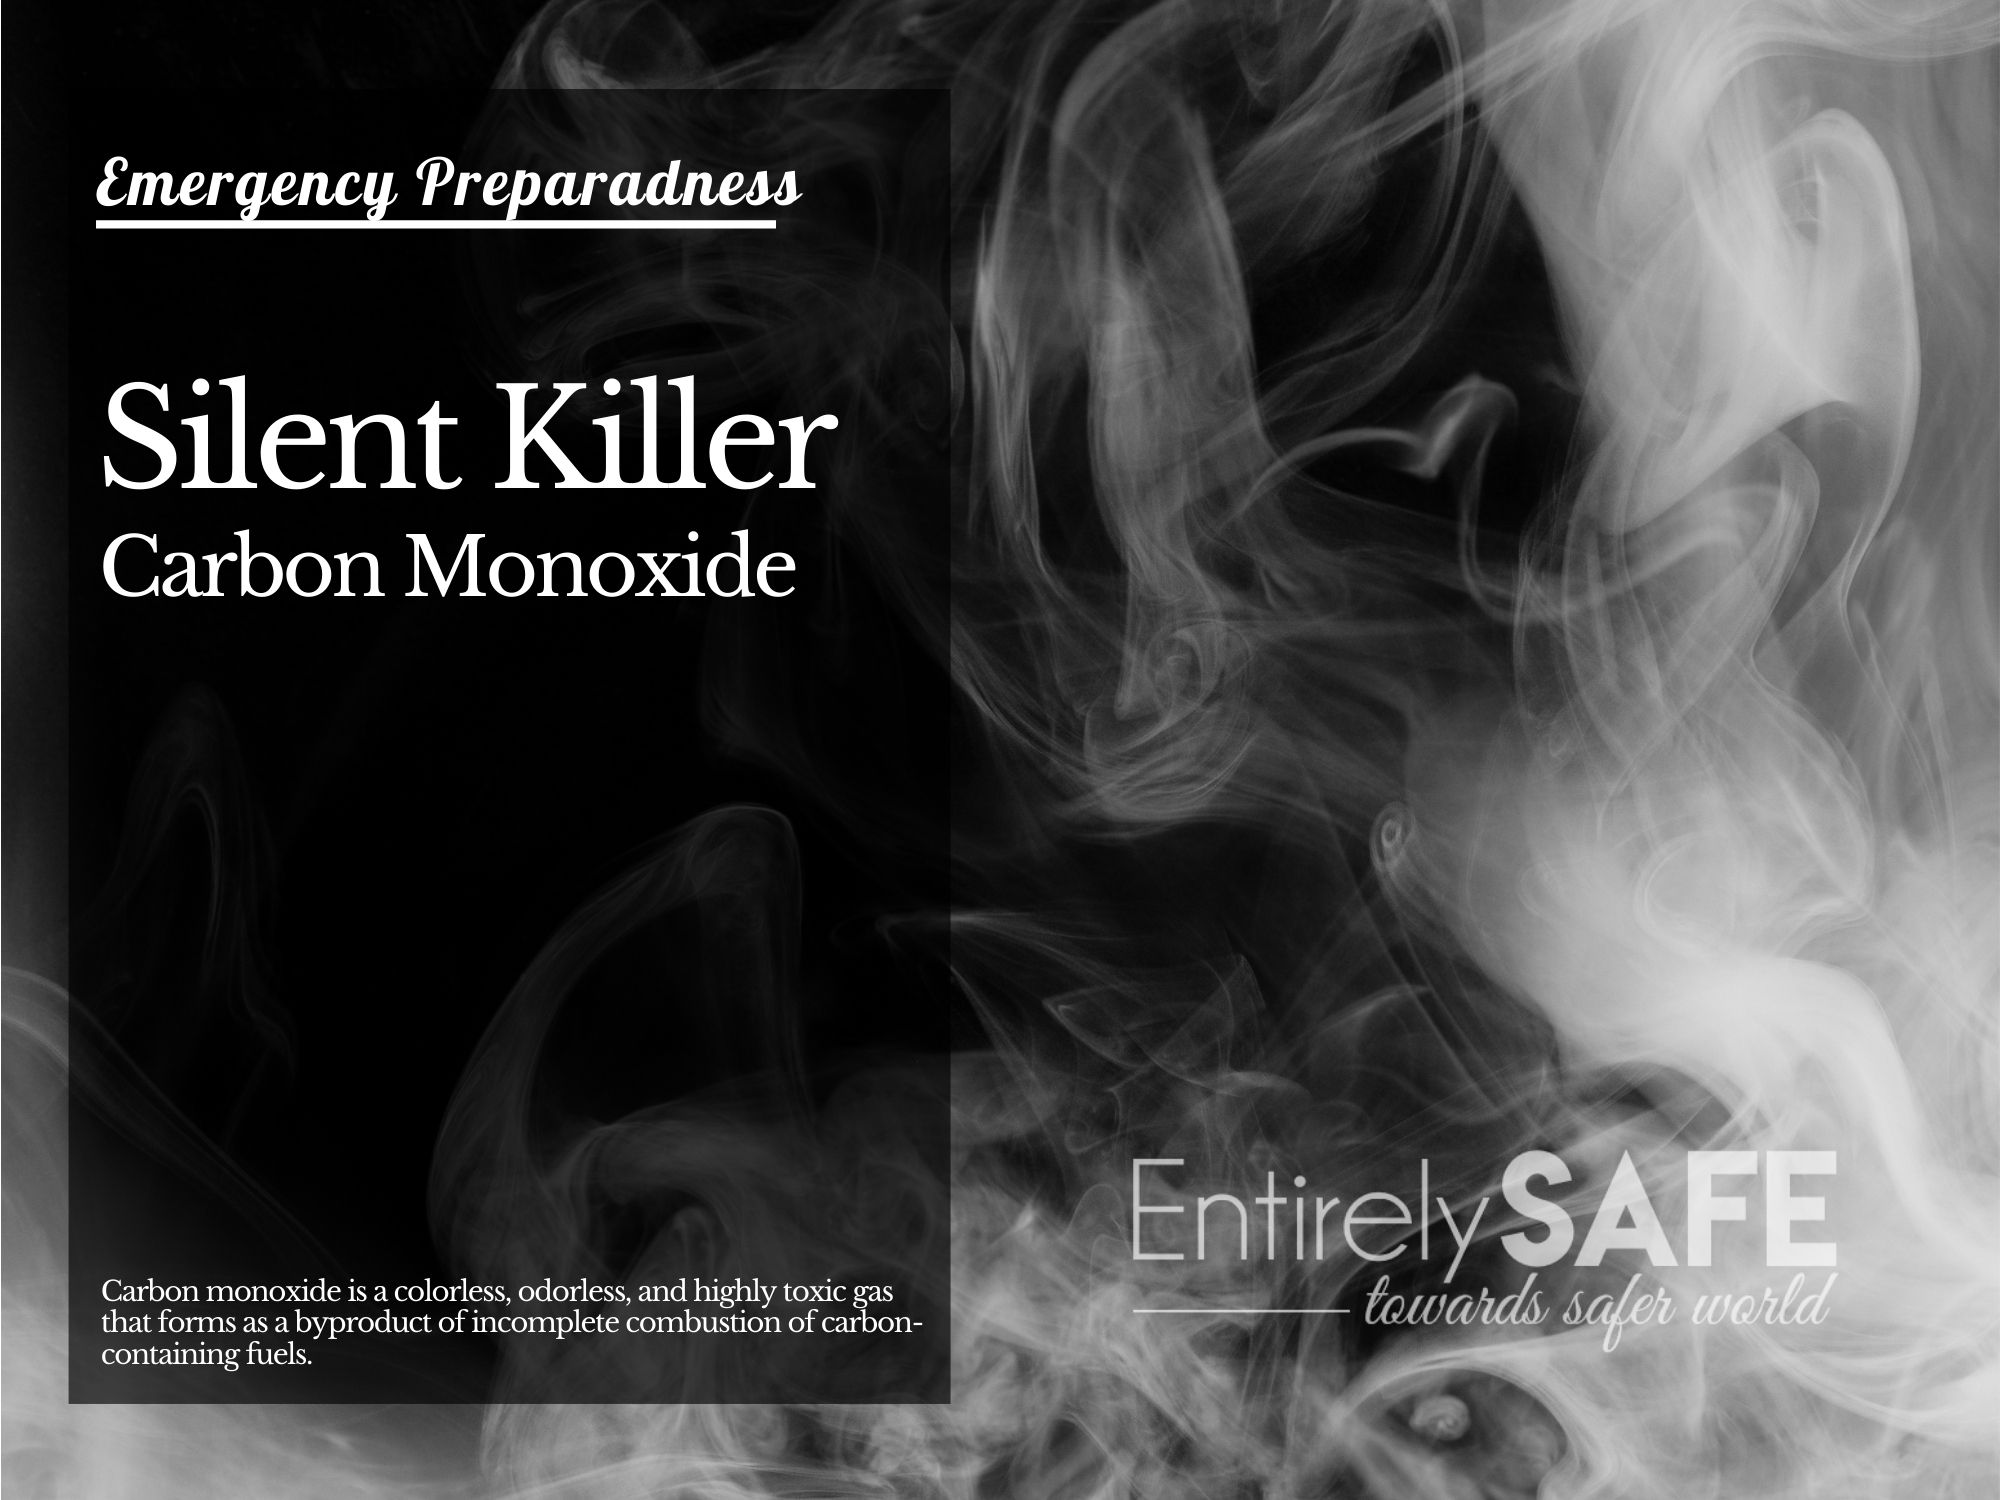 Carbon Monoxide, the Silent Killer